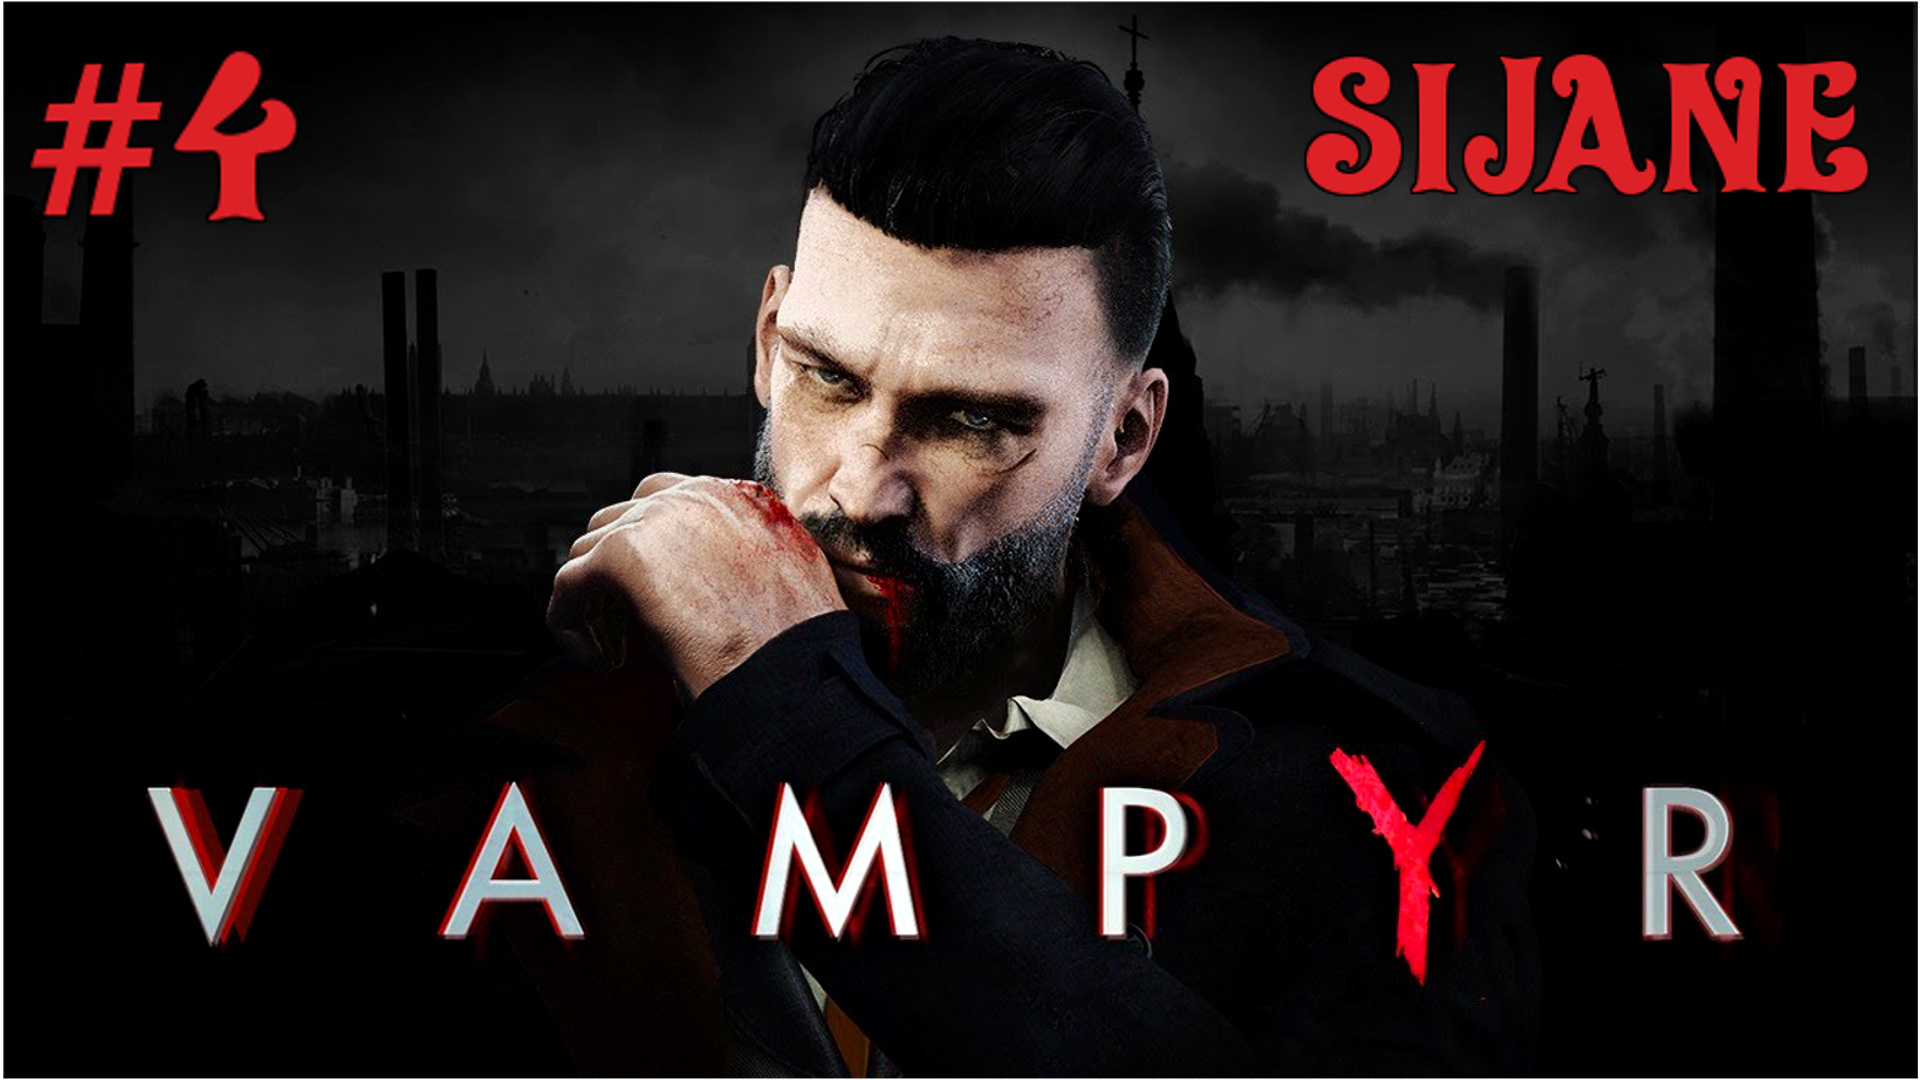 Vampyr #4